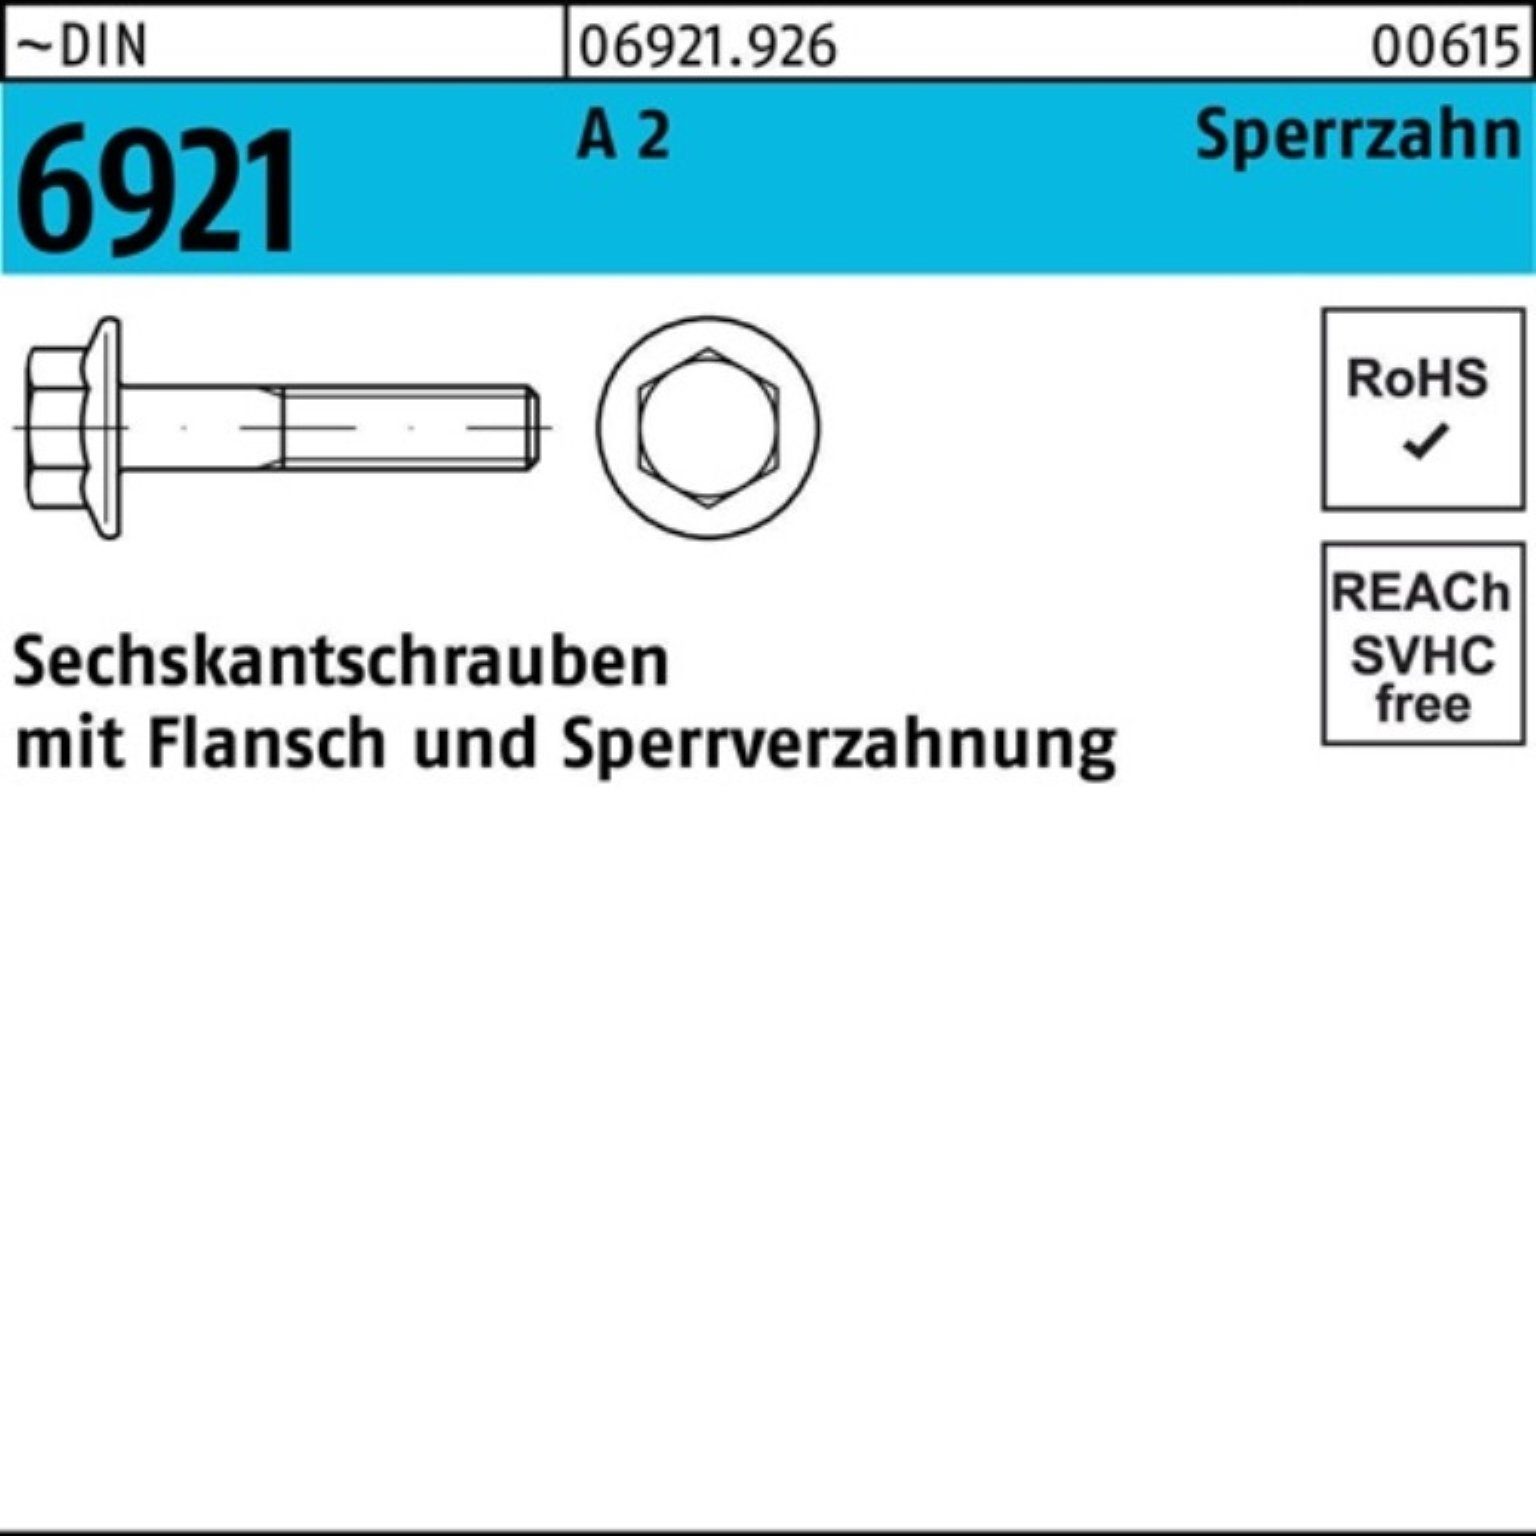 6921 2 DIN 30 Sechskantschraube 100er A Sperrzahnung Reyher Flansch Pack Sechskantschraube M10x